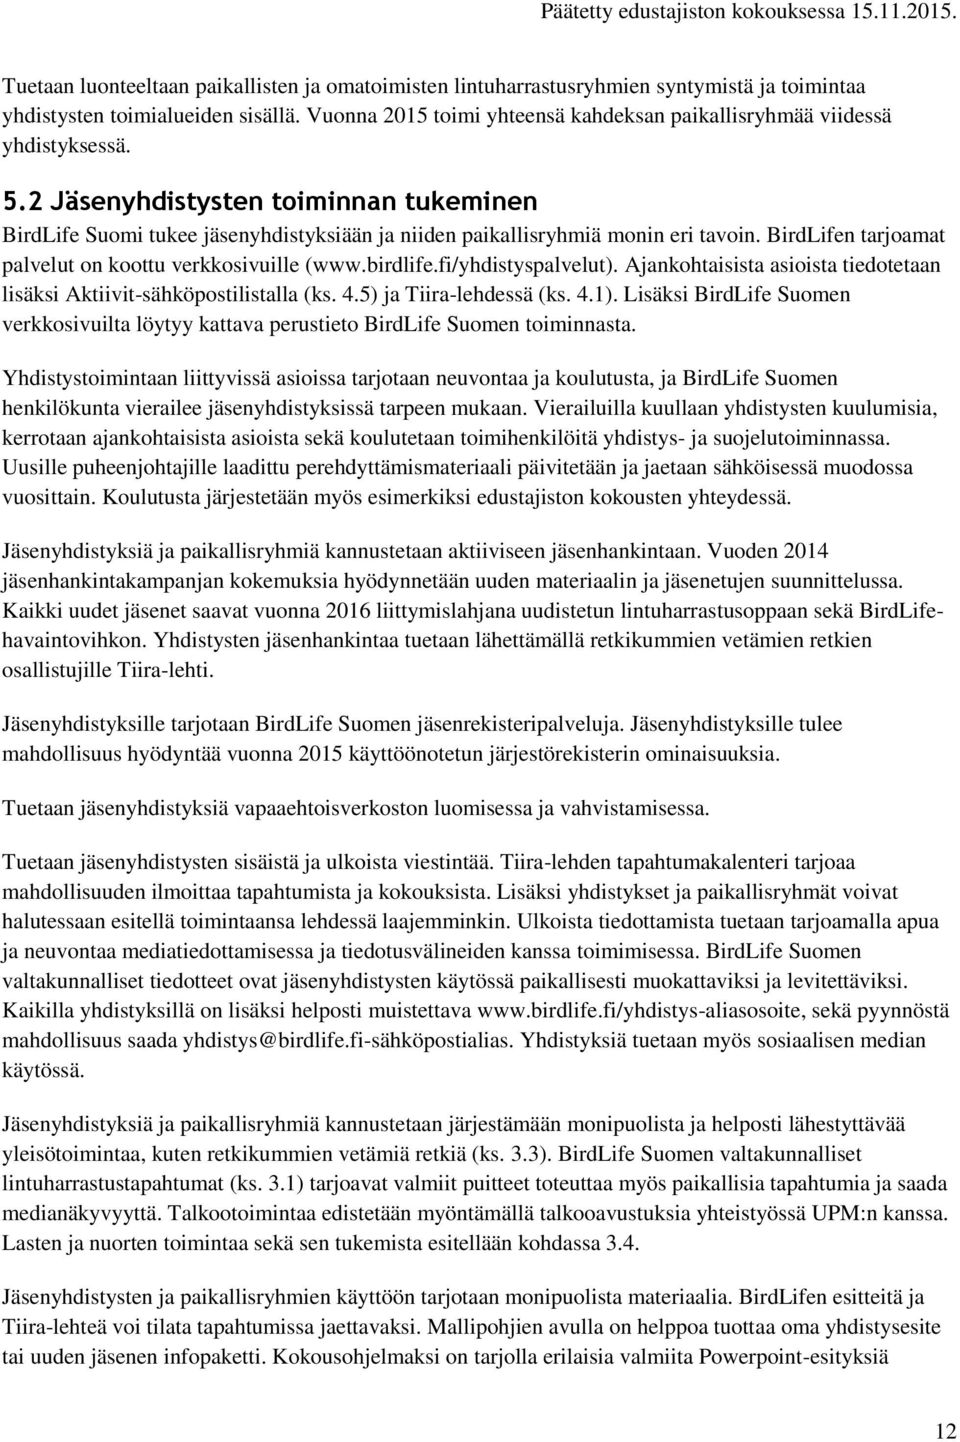 2 Jäsenyhdistysten toiminnan tukeminen BirdLife Suomi tukee jäsenyhdistyksiään ja niiden paikallisryhmiä monin eri tavoin. BirdLifen tarjoamat palvelut on koottu verkkosivuille (www.birdlife.